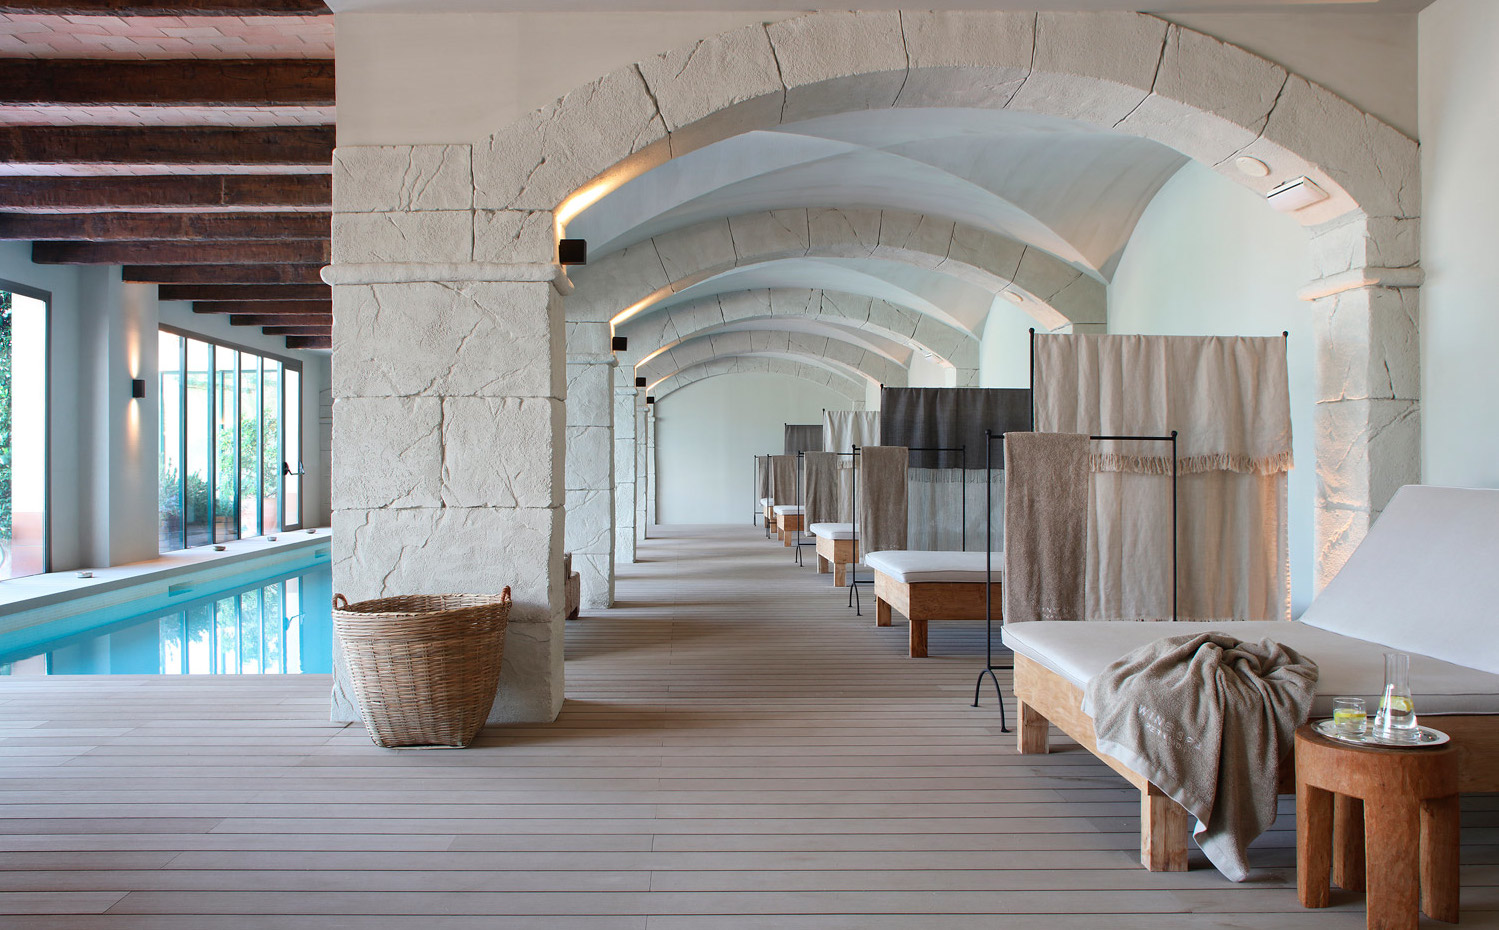 PERALADA-(2). En el spa, revestimiento de paredes, techos y pavimentos en tonos claros